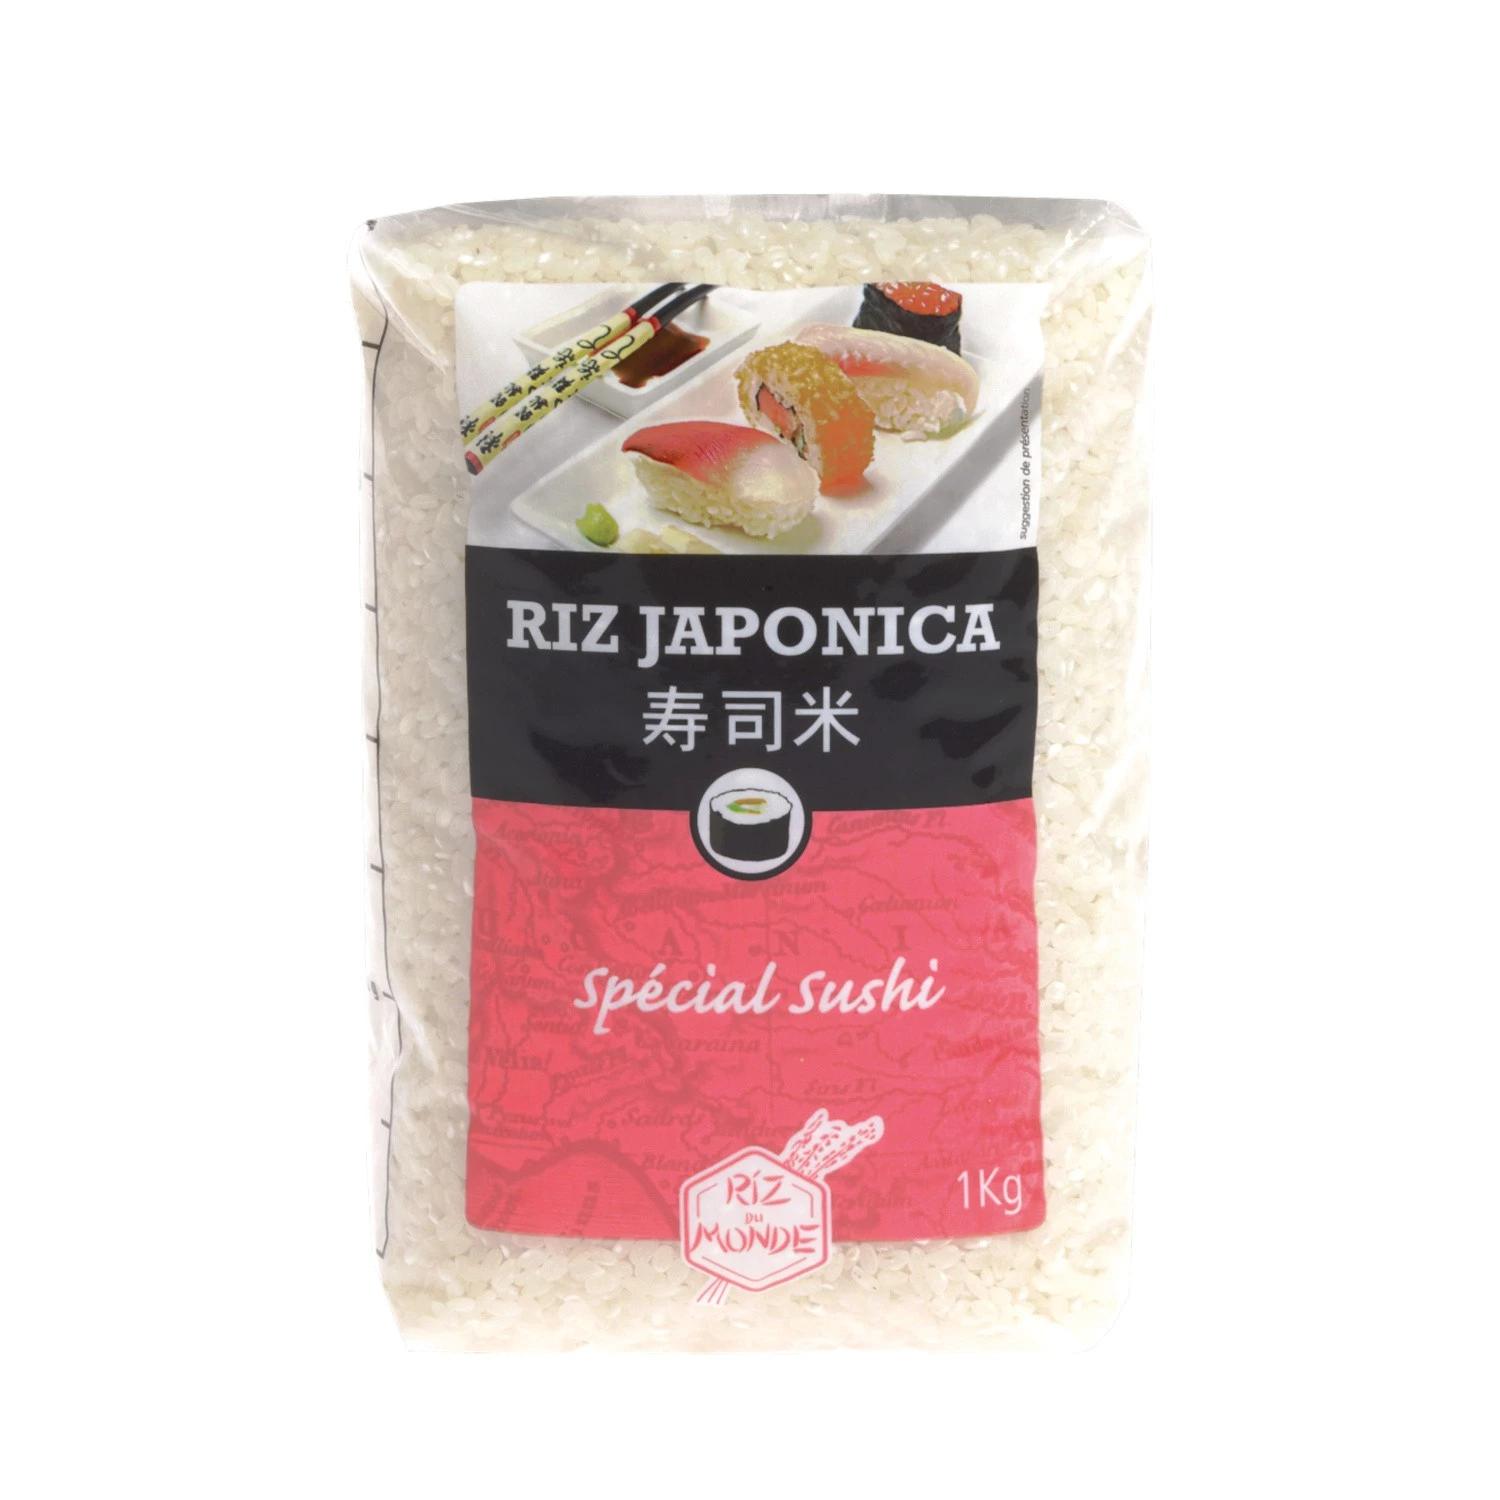 Riz 寿司 1kg - RIZ DU MONDE